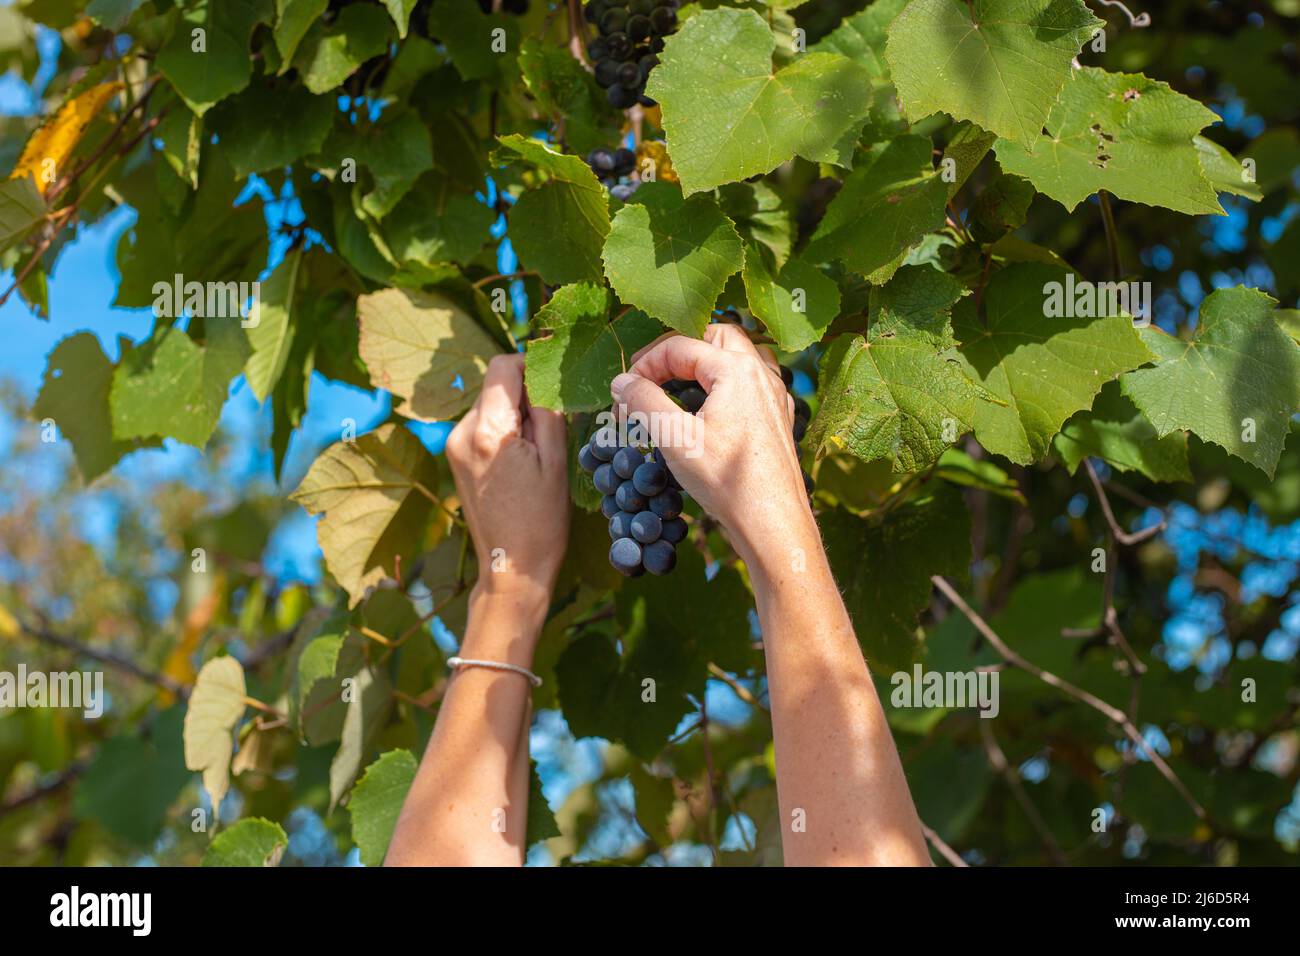 Una donna in giardino raccoglie uve nere Isabella per la produzione del vino. Foto Stock